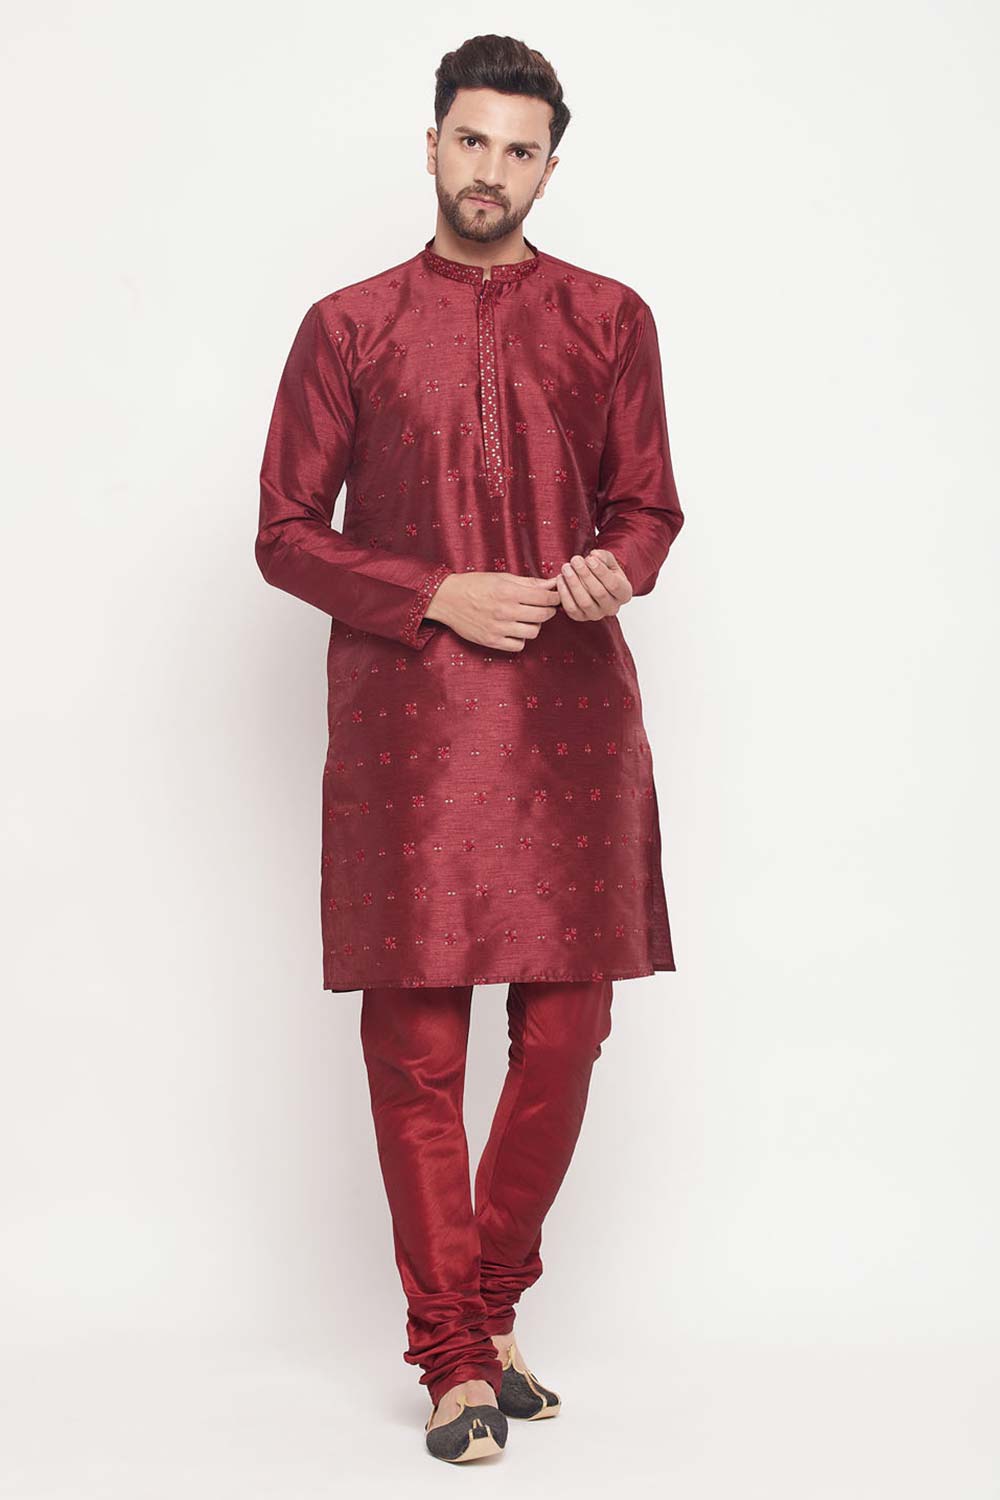 Buy Men's Maroon Silk Blend Ethnic Motif Woven Design Short Kurta Online - Zoom In